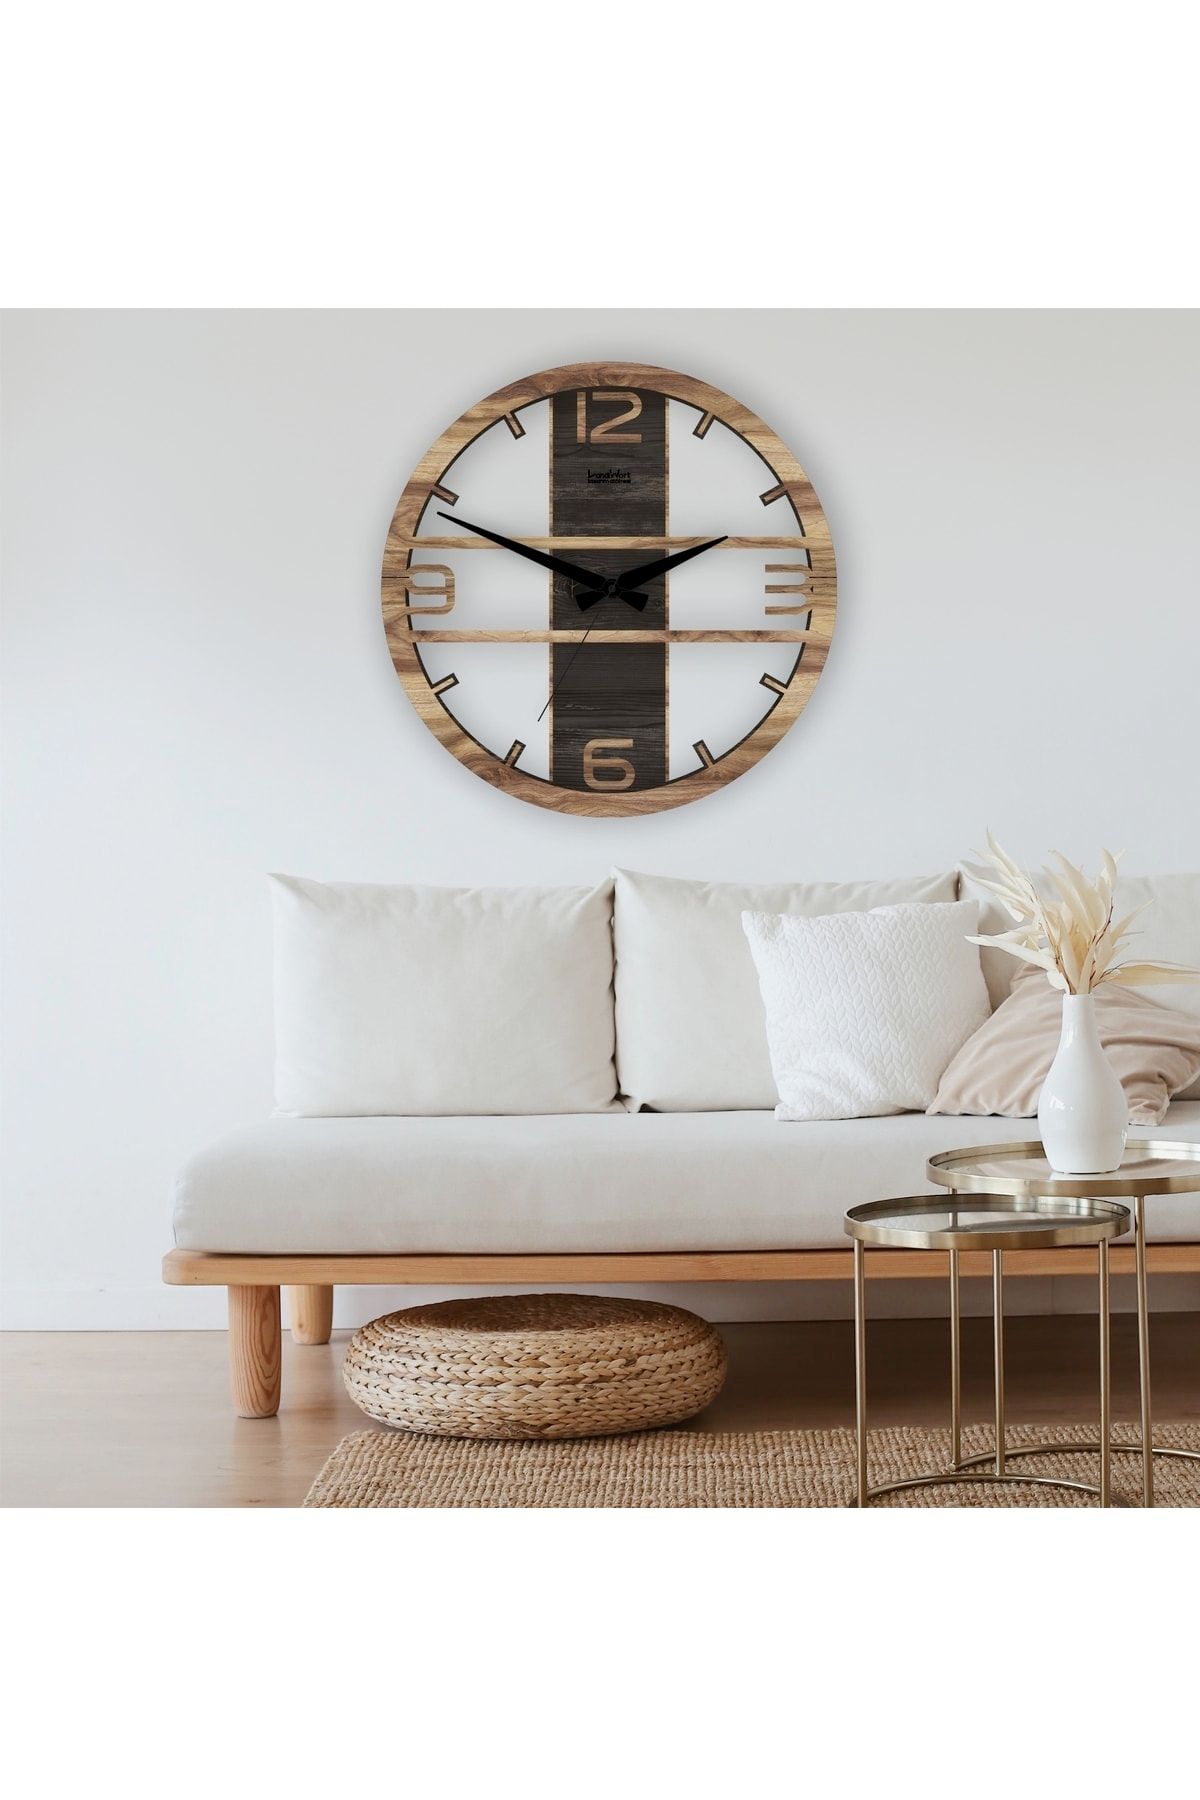 LandiWork Ahşap Duvar Saati, Sessiz Mekanizmalı Duvar Saati, Modern Duvar Saati, 42cm